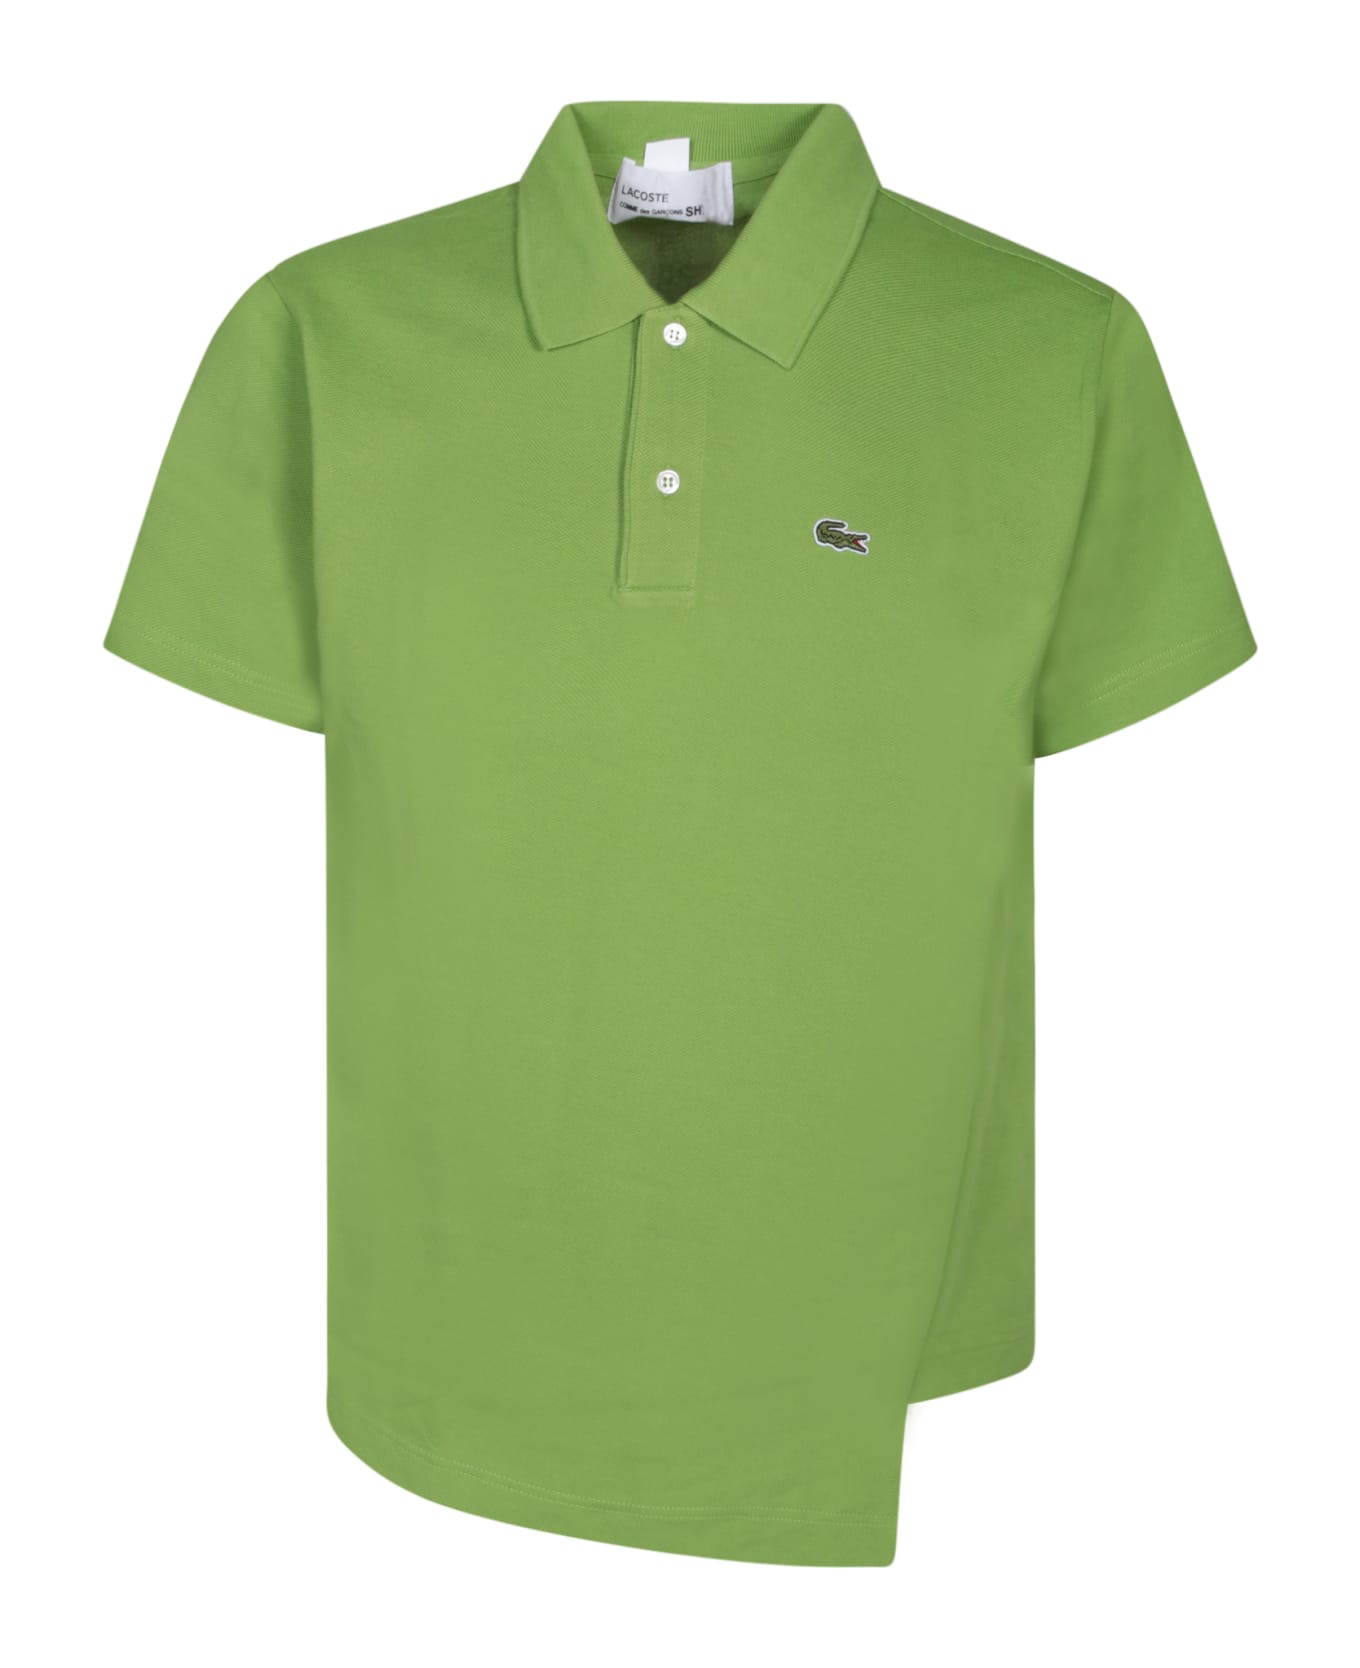 Comme des Garçons Shirt Boss Asymmetric Green Polo Shirt - Green ポロシャツ